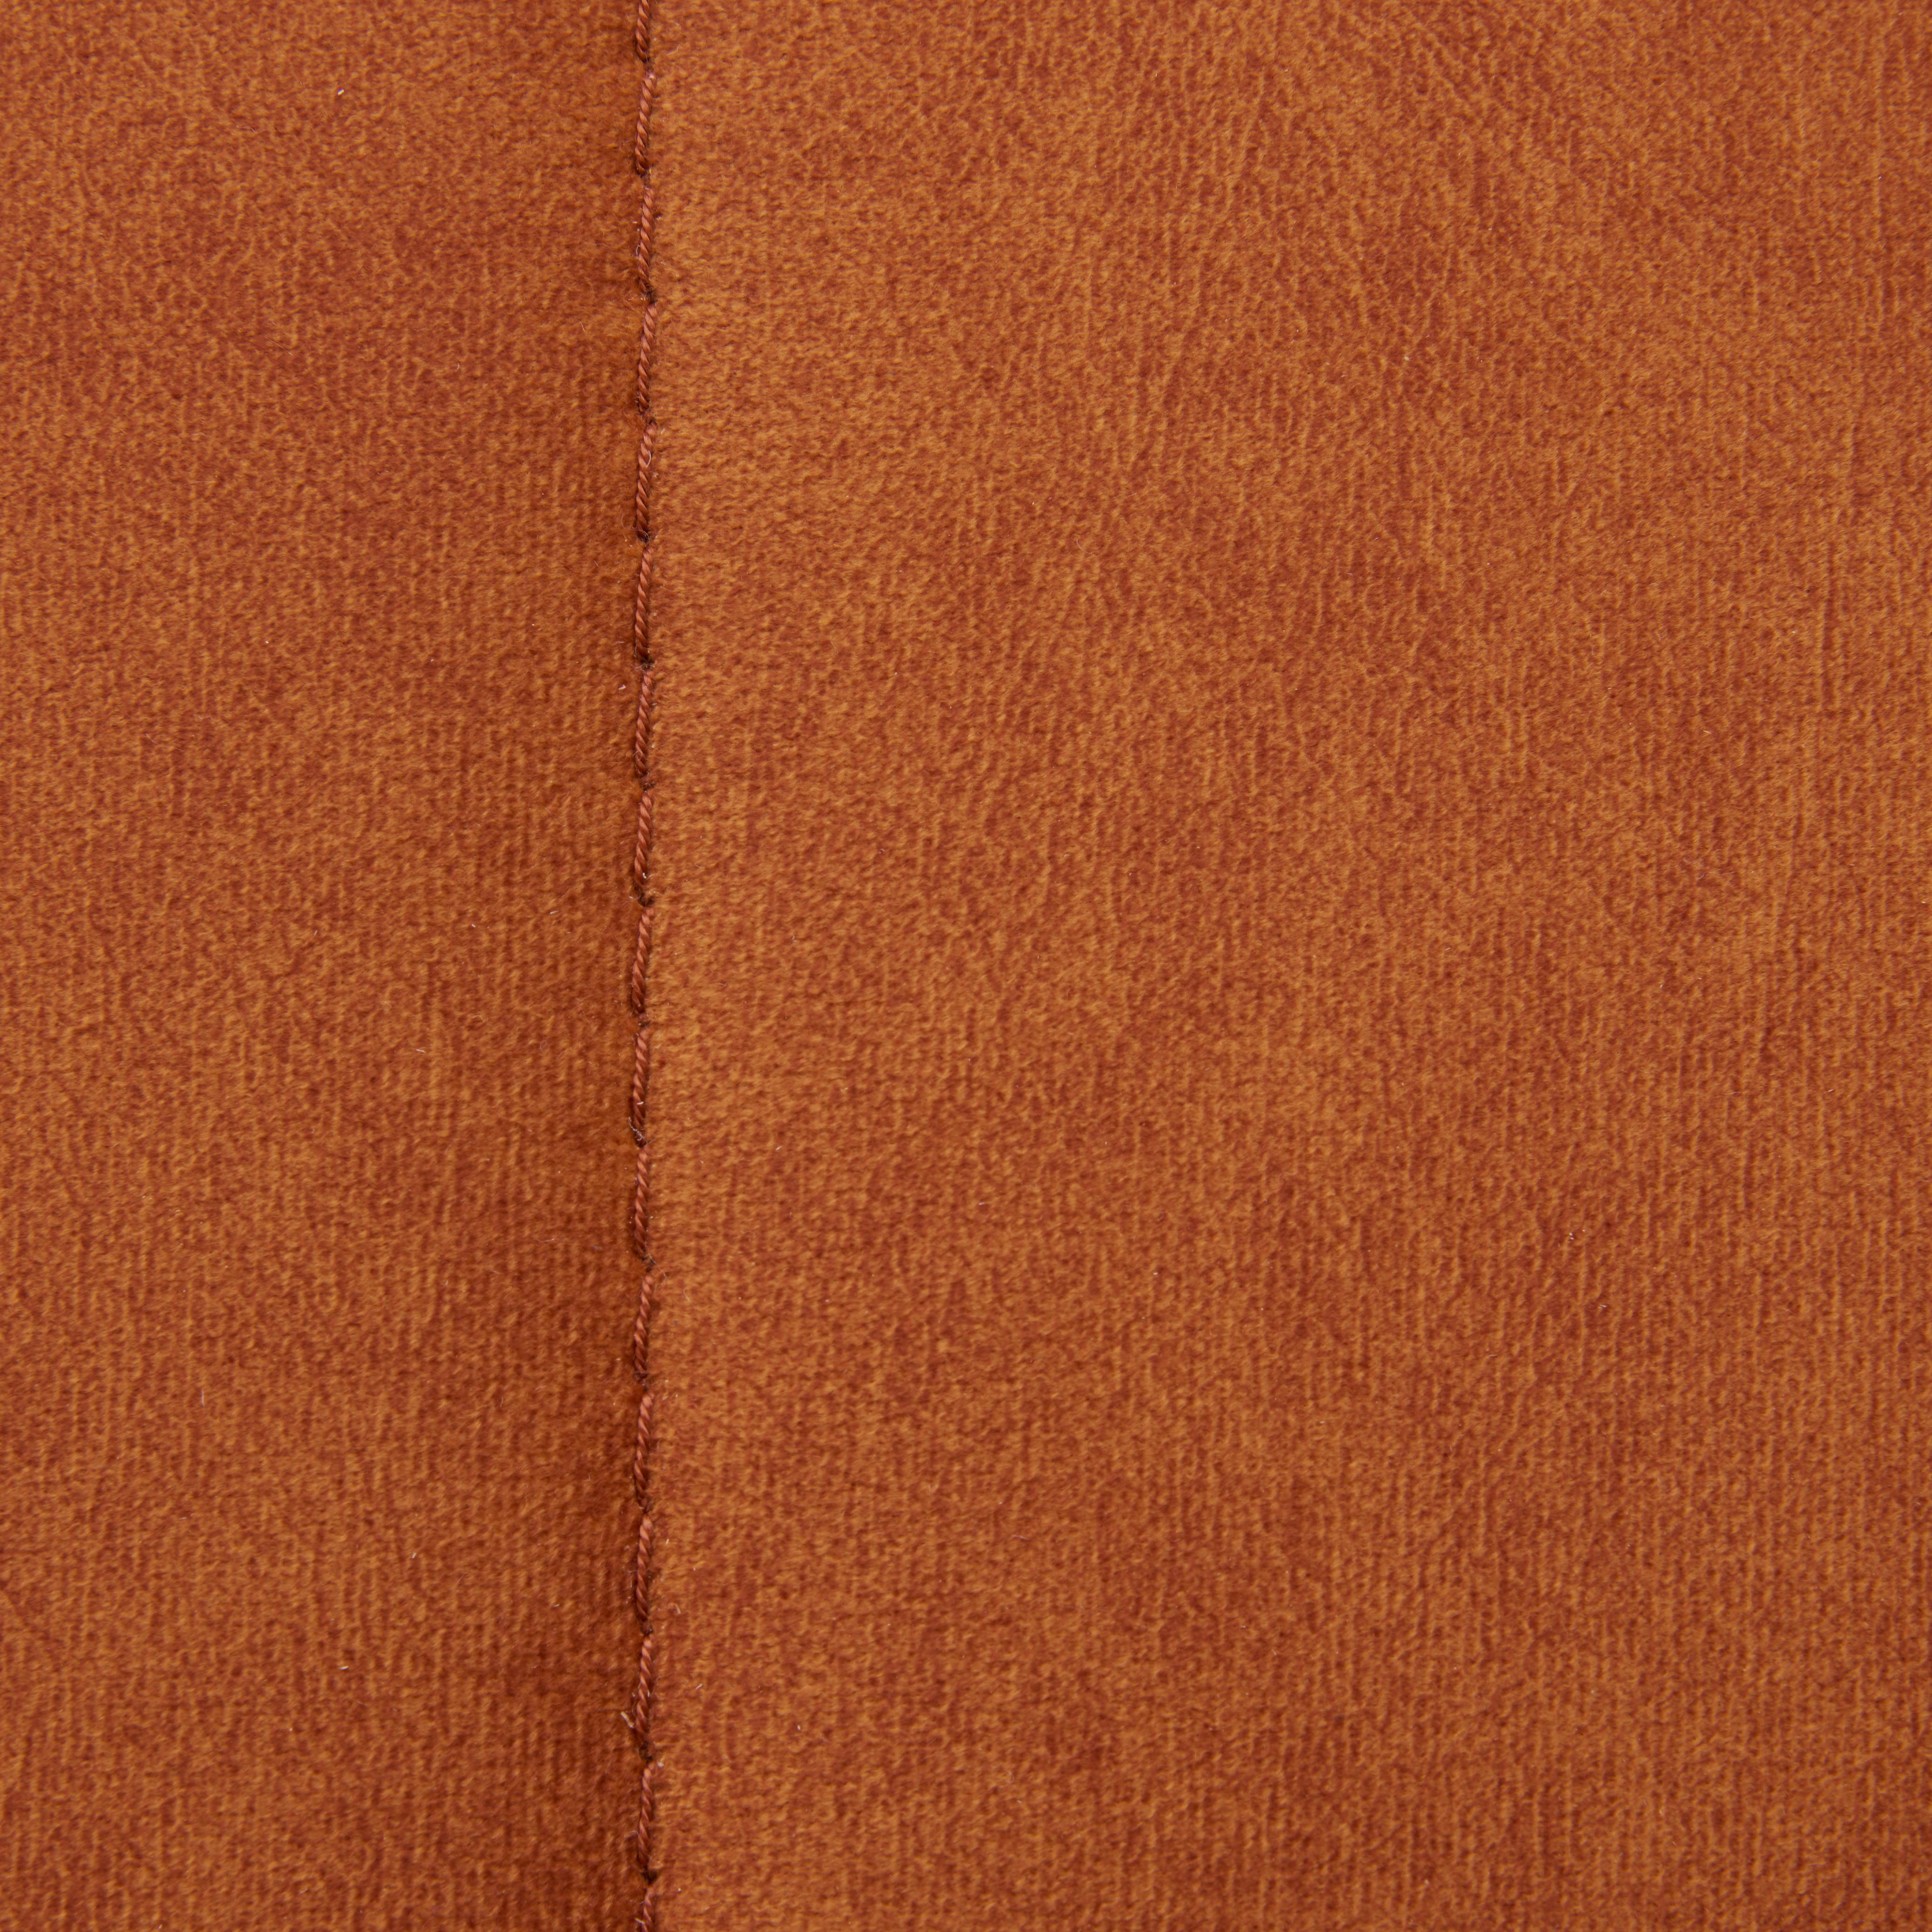 WOHNLANDSCHAFT Orange Velours  - Schwarz/Orange, Design, Textil/Metall (181/267cm) - Carryhome